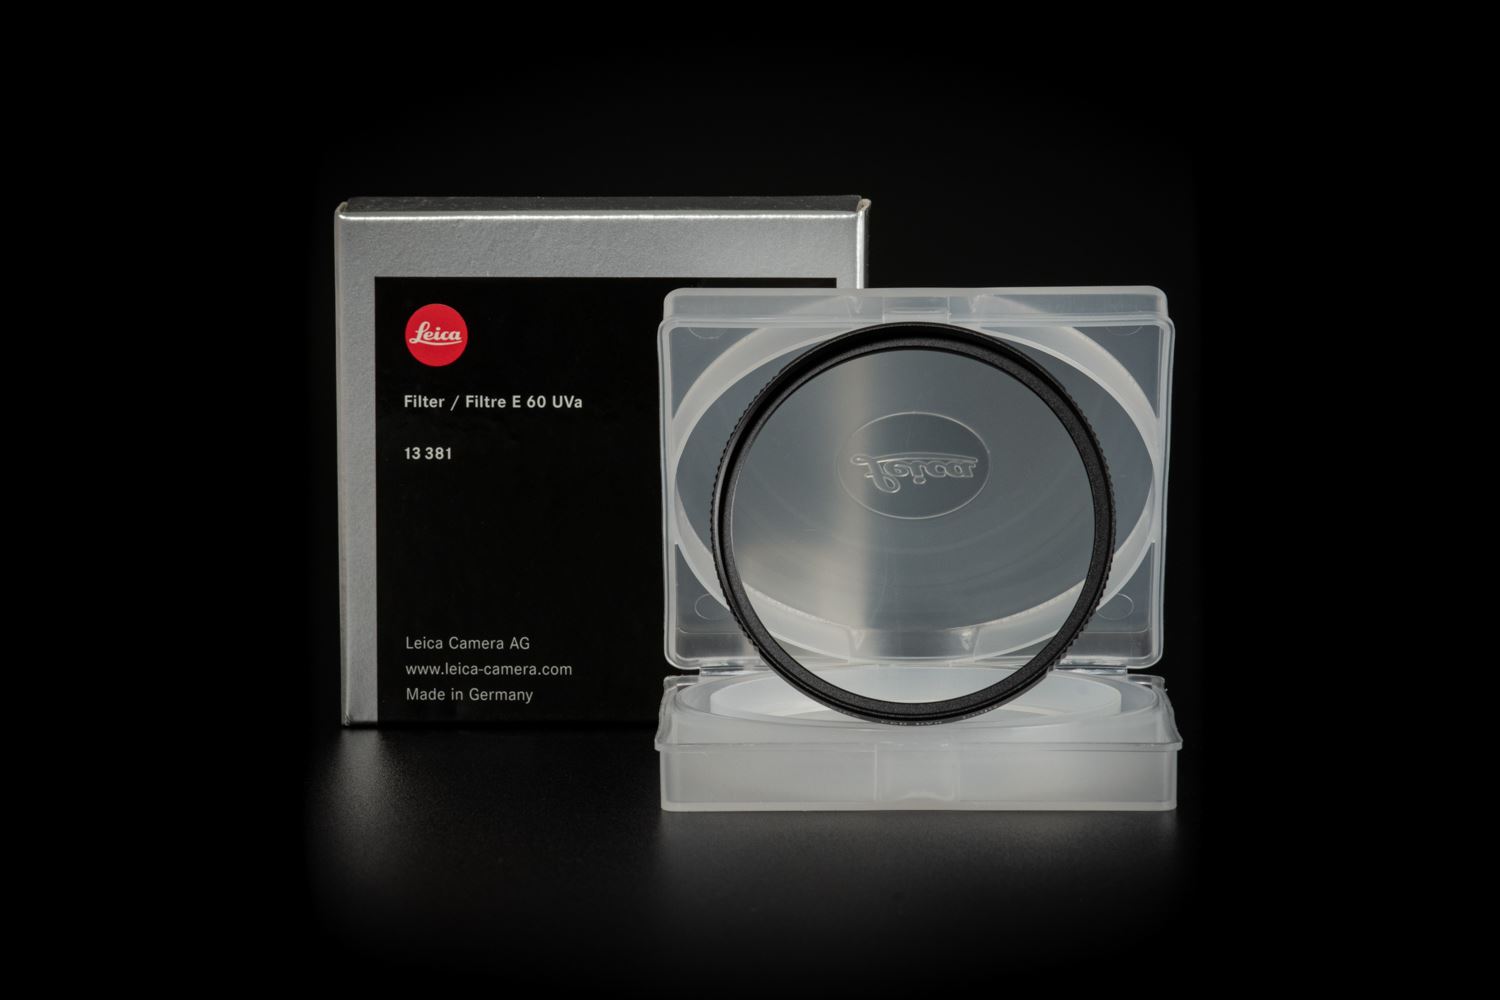 Picture of Leica Filter E60 Uva Black